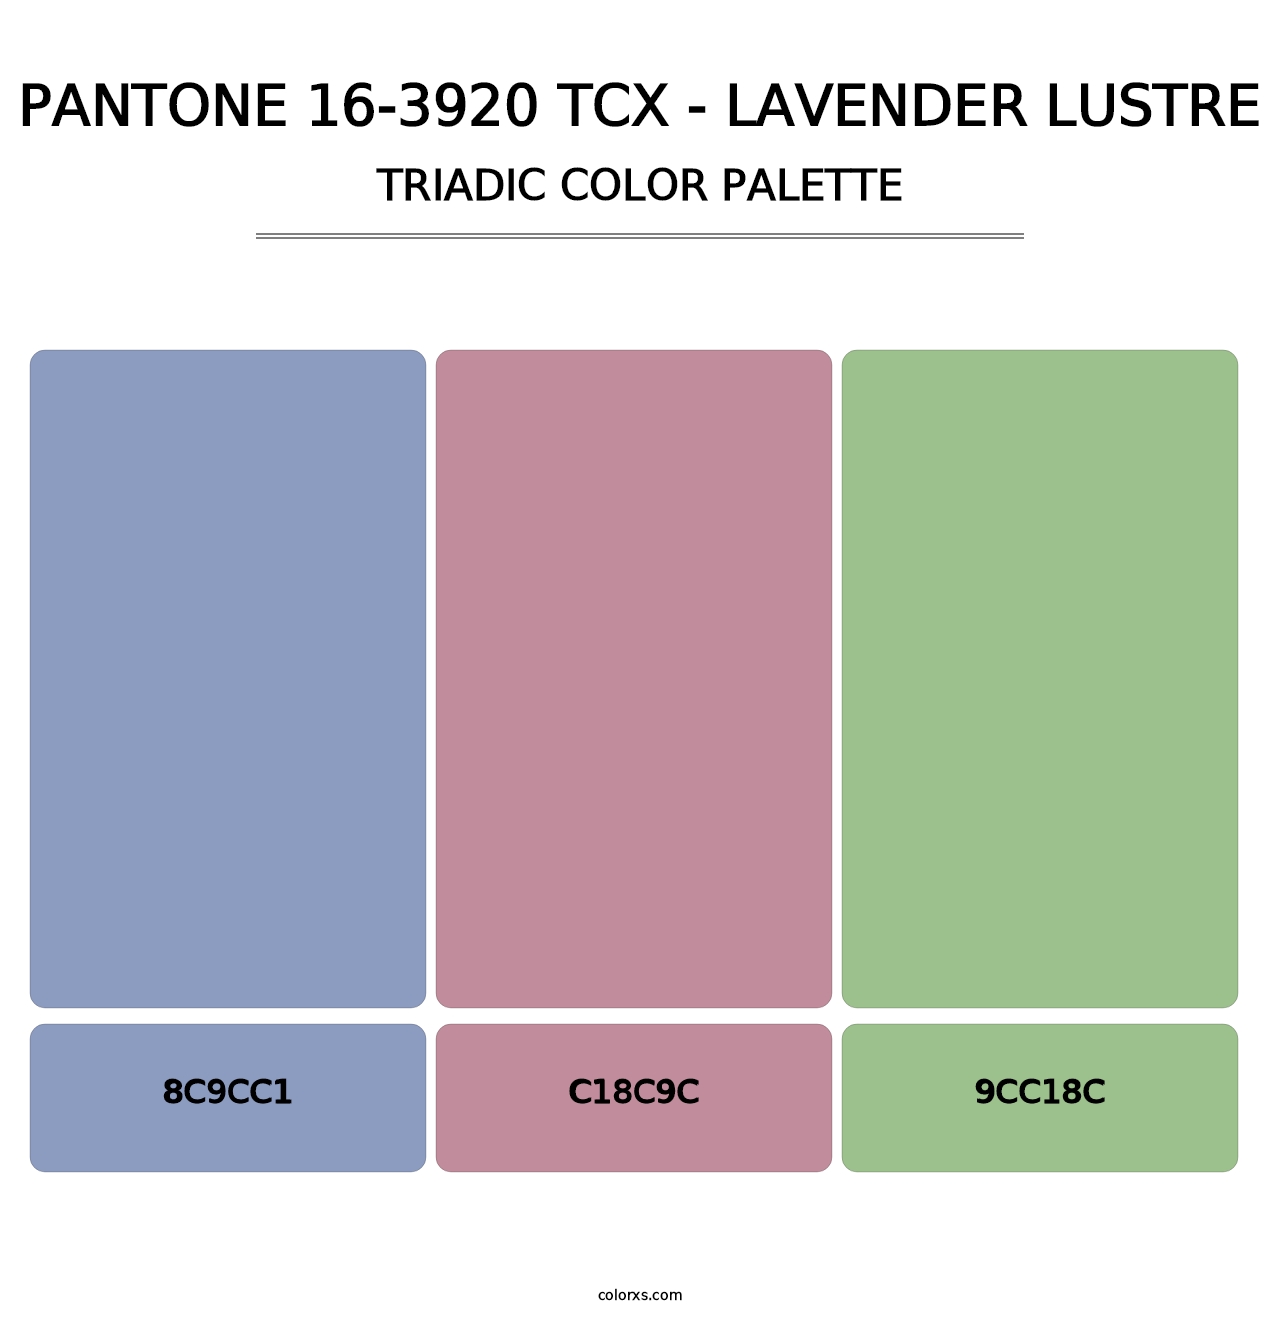 PANTONE 16-3920 TCX - Lavender Lustre - Triadic Color Palette